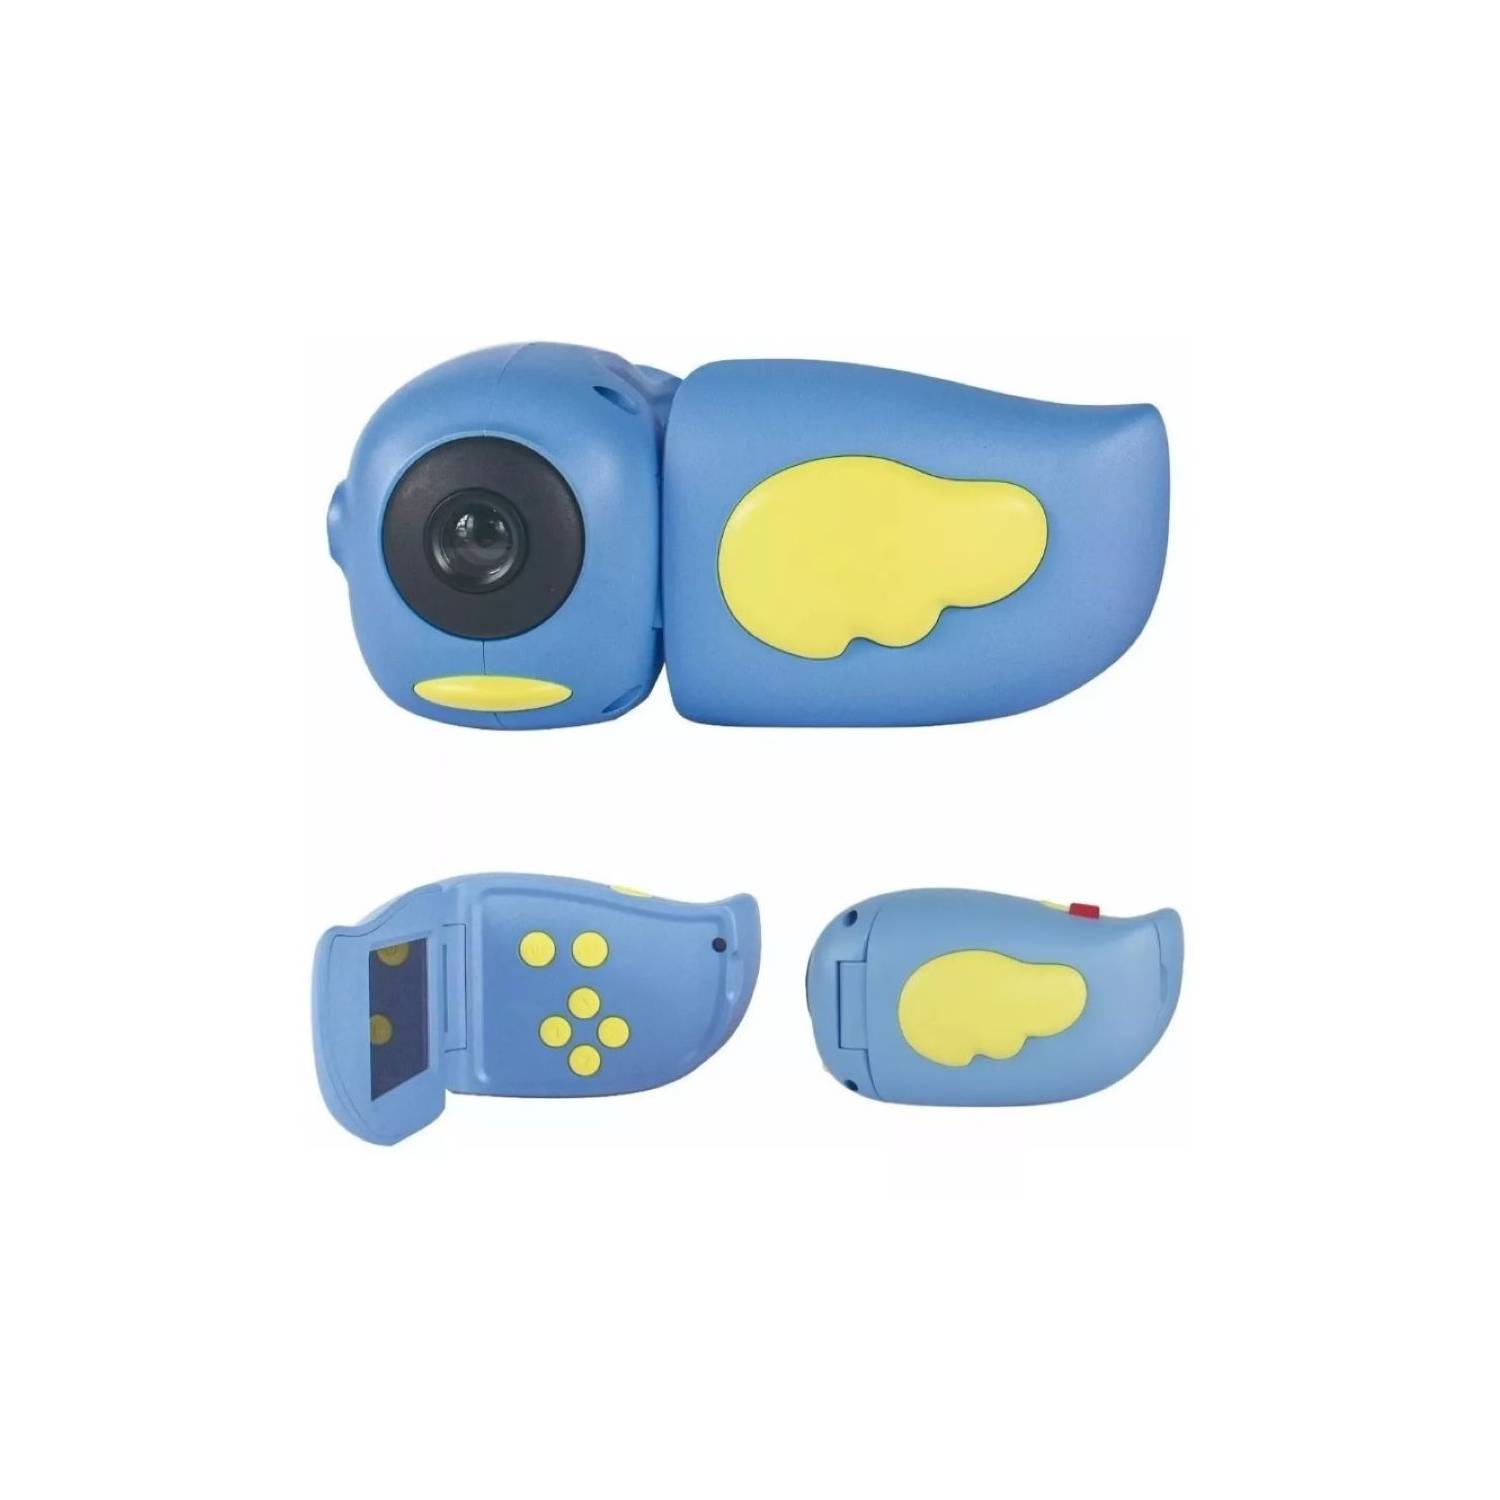  Micro cámara digital, resolución de 1280 x 960, tamaño pulgar,  ultra mini cámara en un llavero, mini cámara portátil DV compatible con  tarjeta de memoria de 32G para niños y adultos (